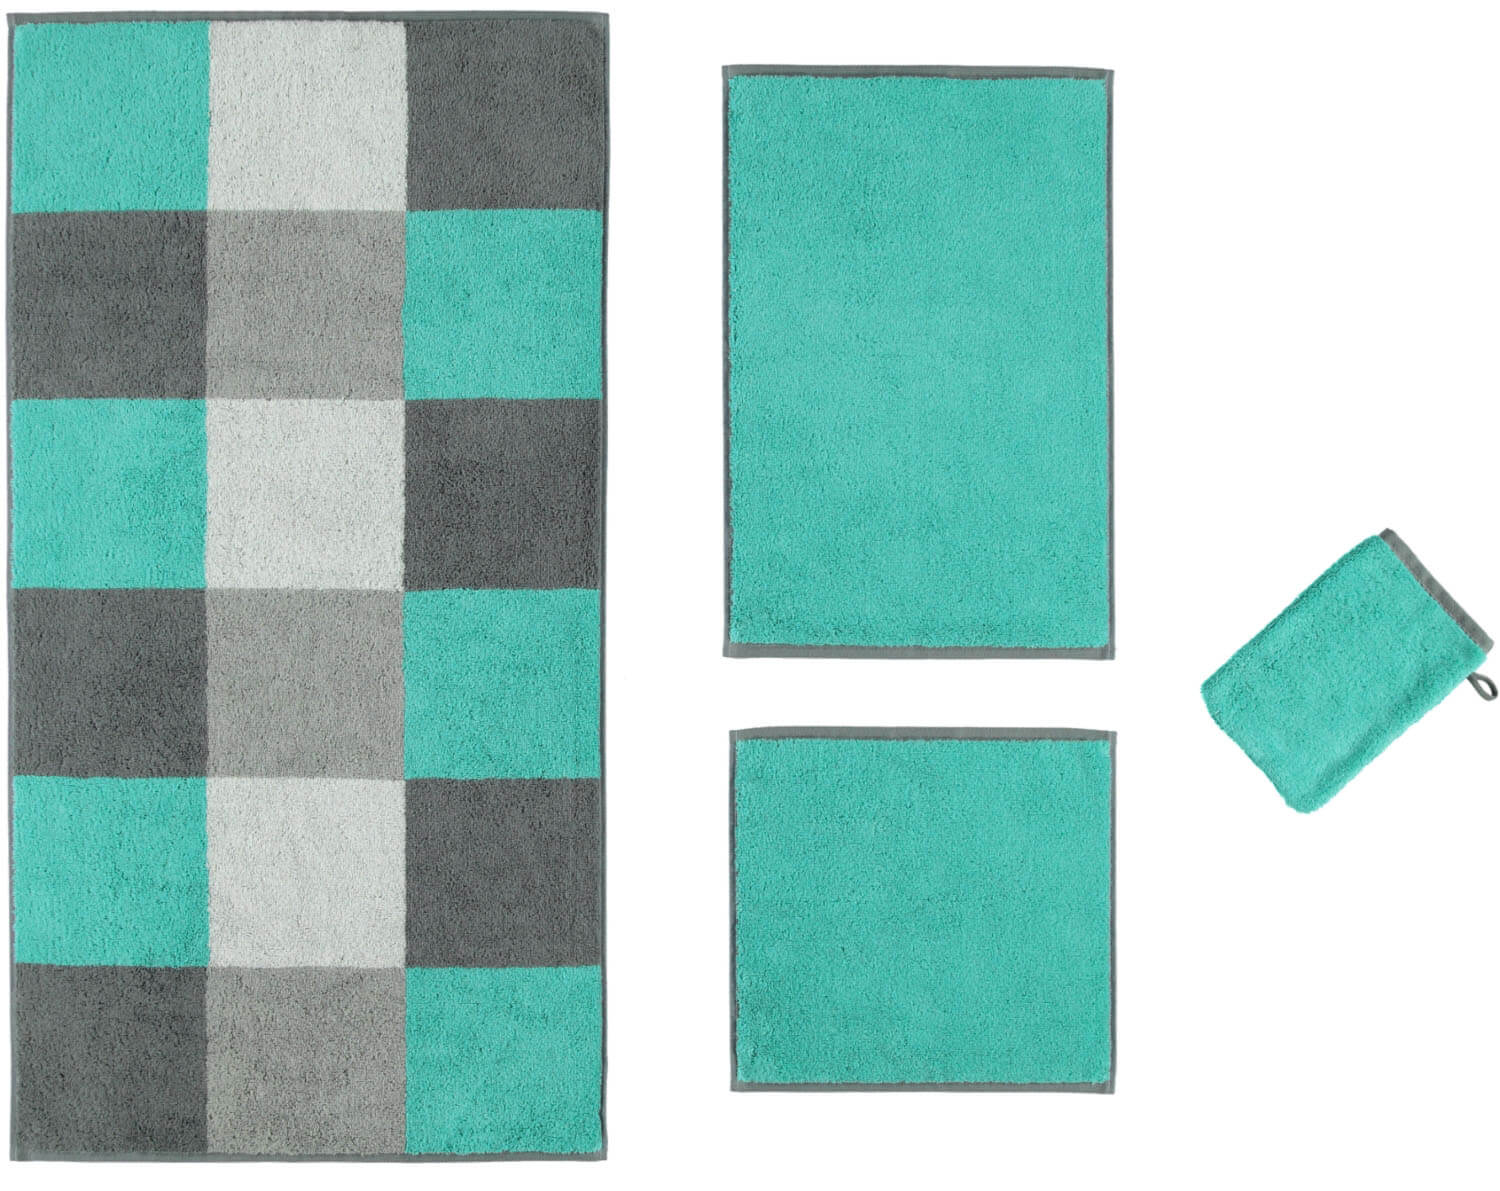 Махровое полотенце Studio Cubes Turkis ☞ Размер: 30 x 50 см